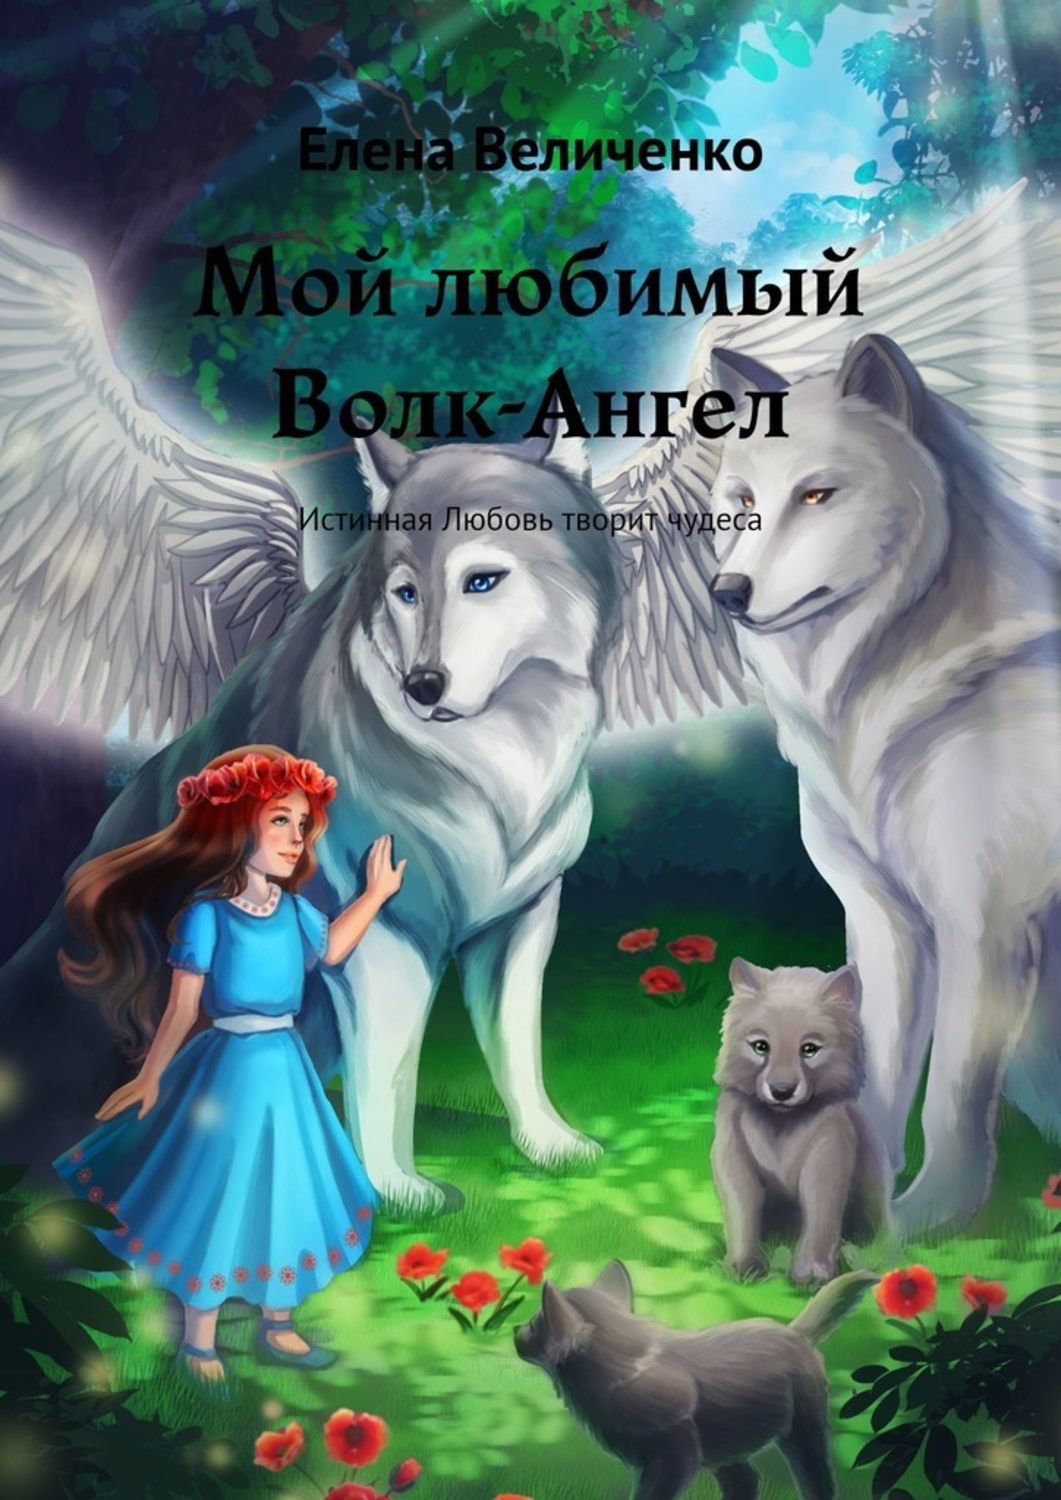 Читать книги про волков. Волк ангел. Любовь волка книга. Мой любимый волк. Книга про девочку и Волков.